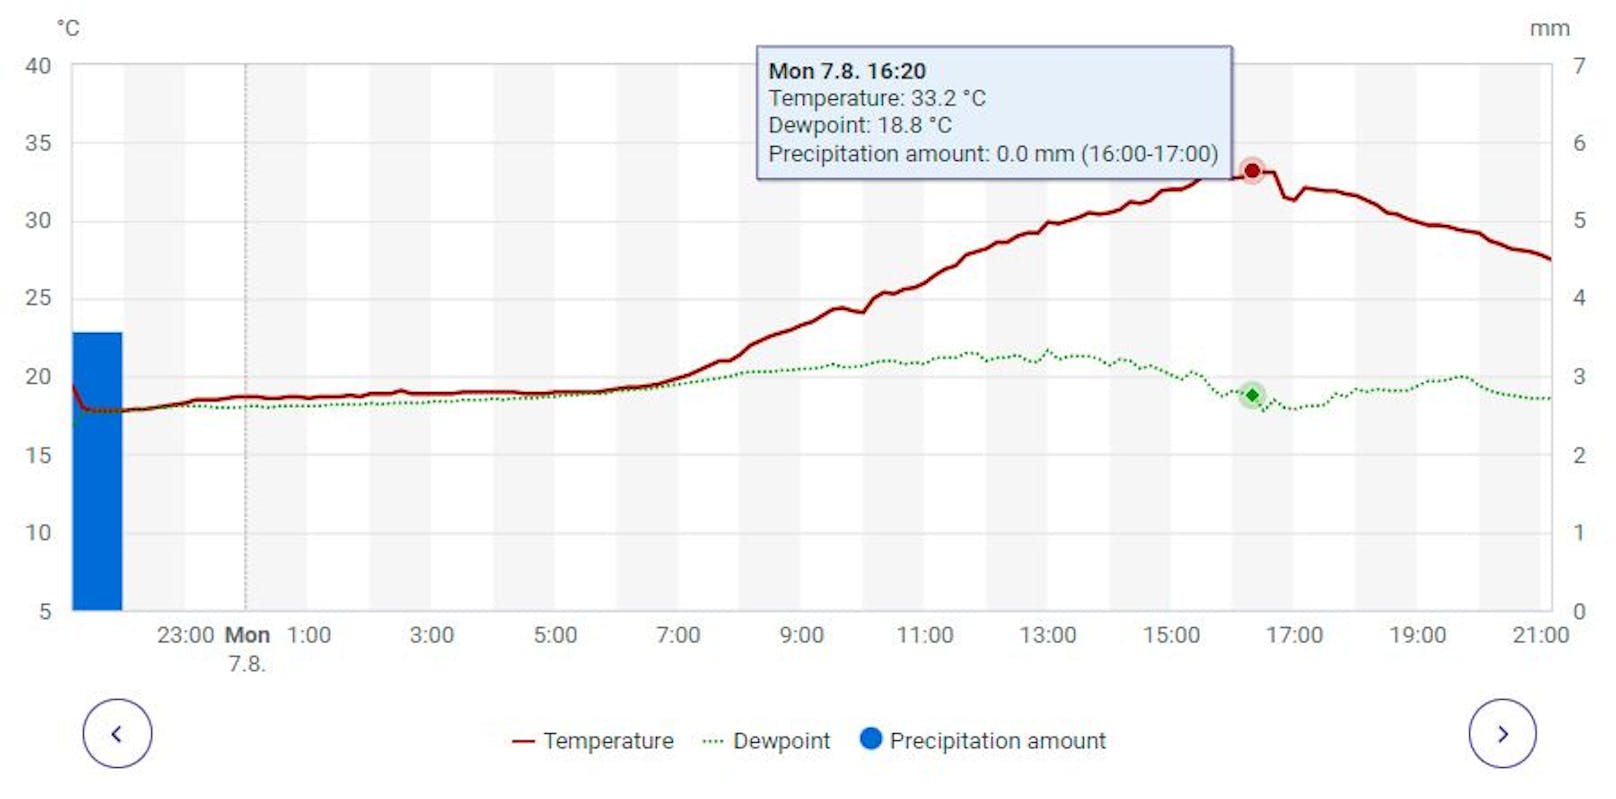 Mehr als 33 Grad waren es am Montagnachmittag an der Wetterstation Rauma Pyynpää laut den <a target="_blank" href="https://en.ilmatieteenlaitos.fi/local-weather/rauma">Messdaten des Finnischen Meteorologischen Instituts</a>.